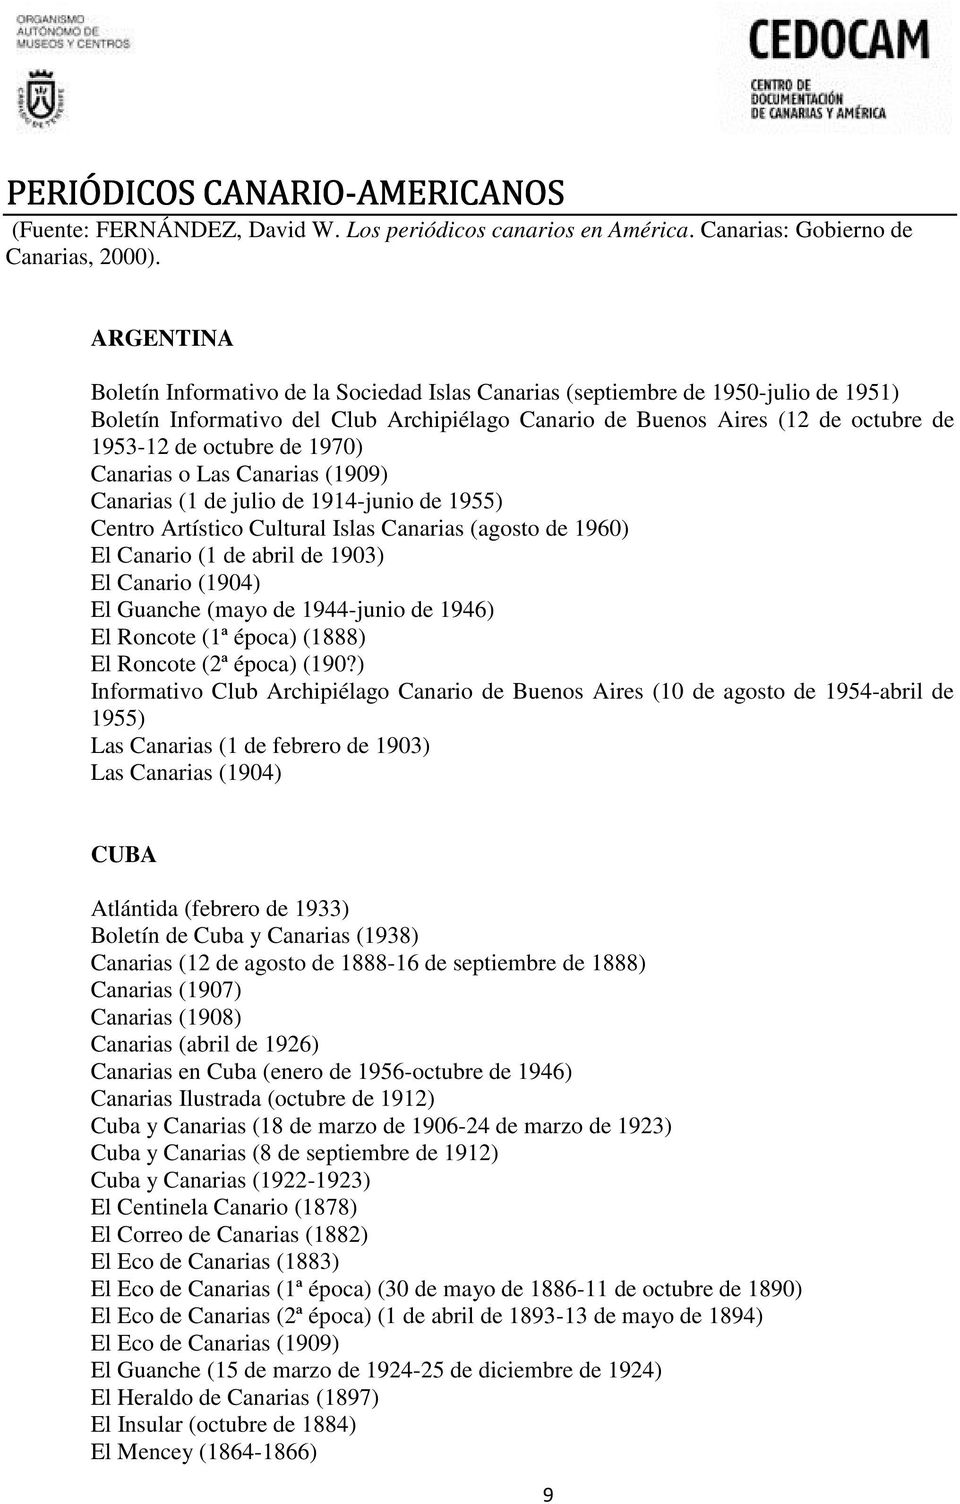 de 1970) Canarias o Las Canarias (1909) Canarias (1 de julio de 1914-junio de 1955) Centro Artístico Cultural Islas Canarias (agosto de 1960) El Canario (1 de abril de 1903) El Canario (1904) El